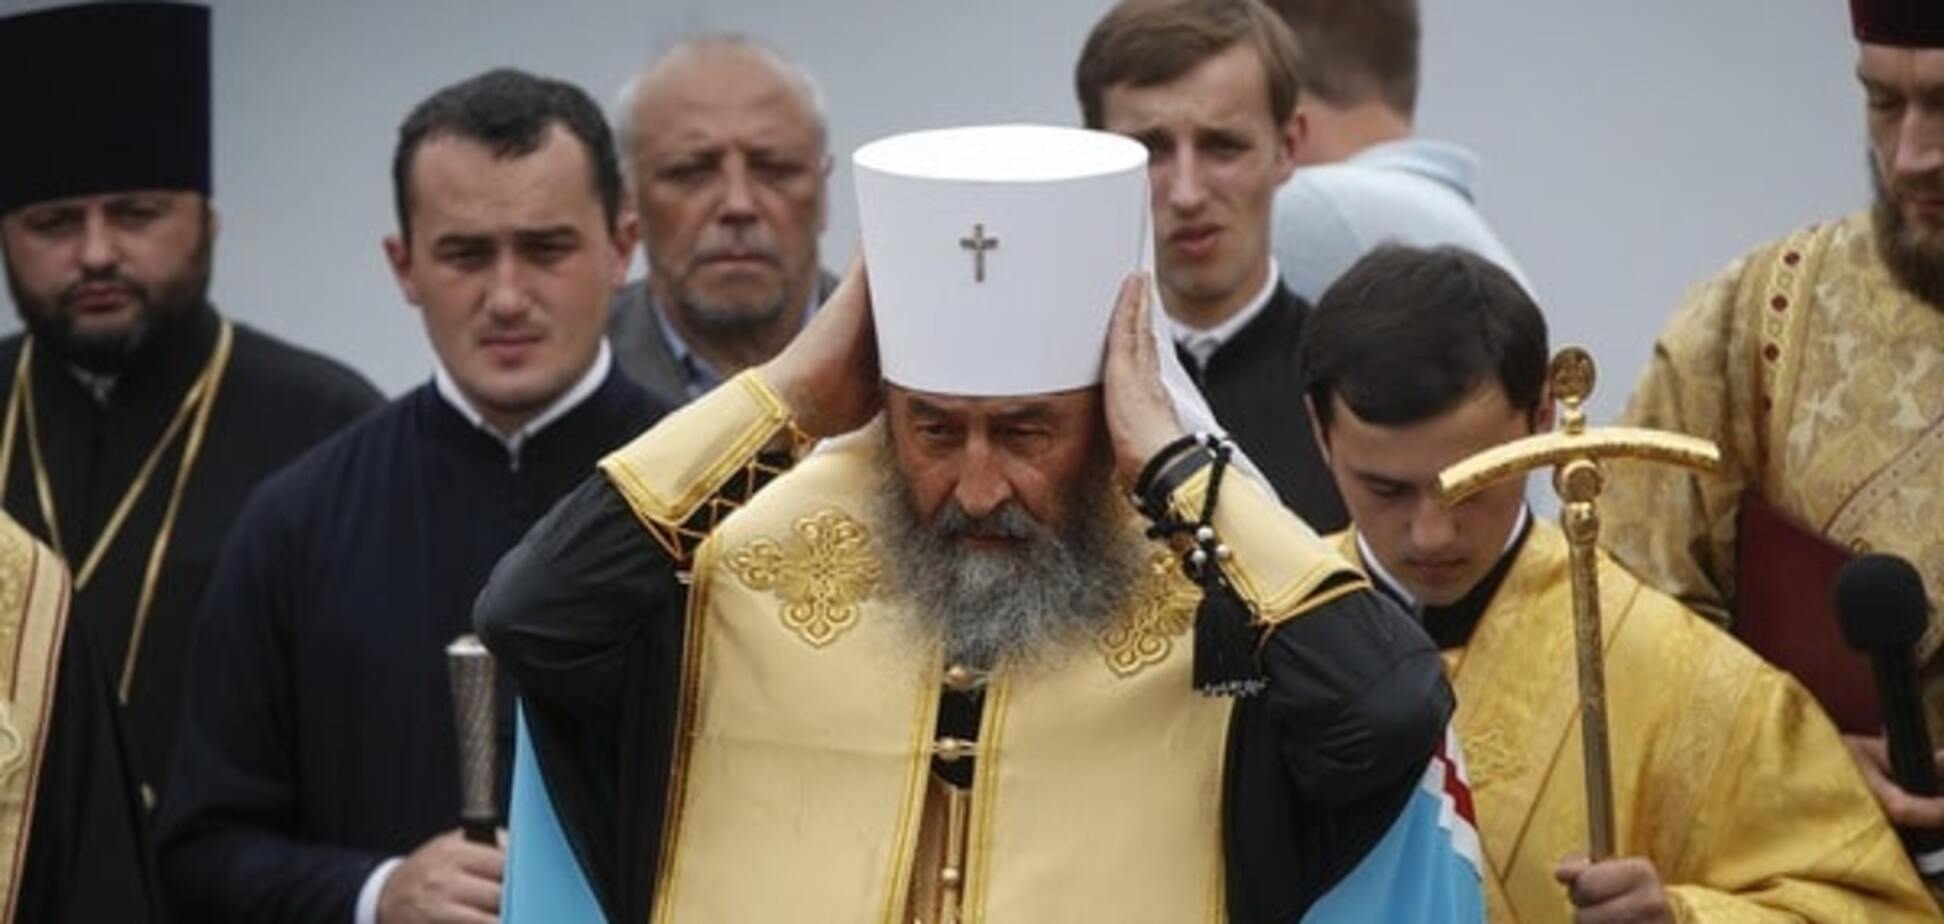 Создание единой церкви в Украине: УПЦ МП выдвинула власти претензии